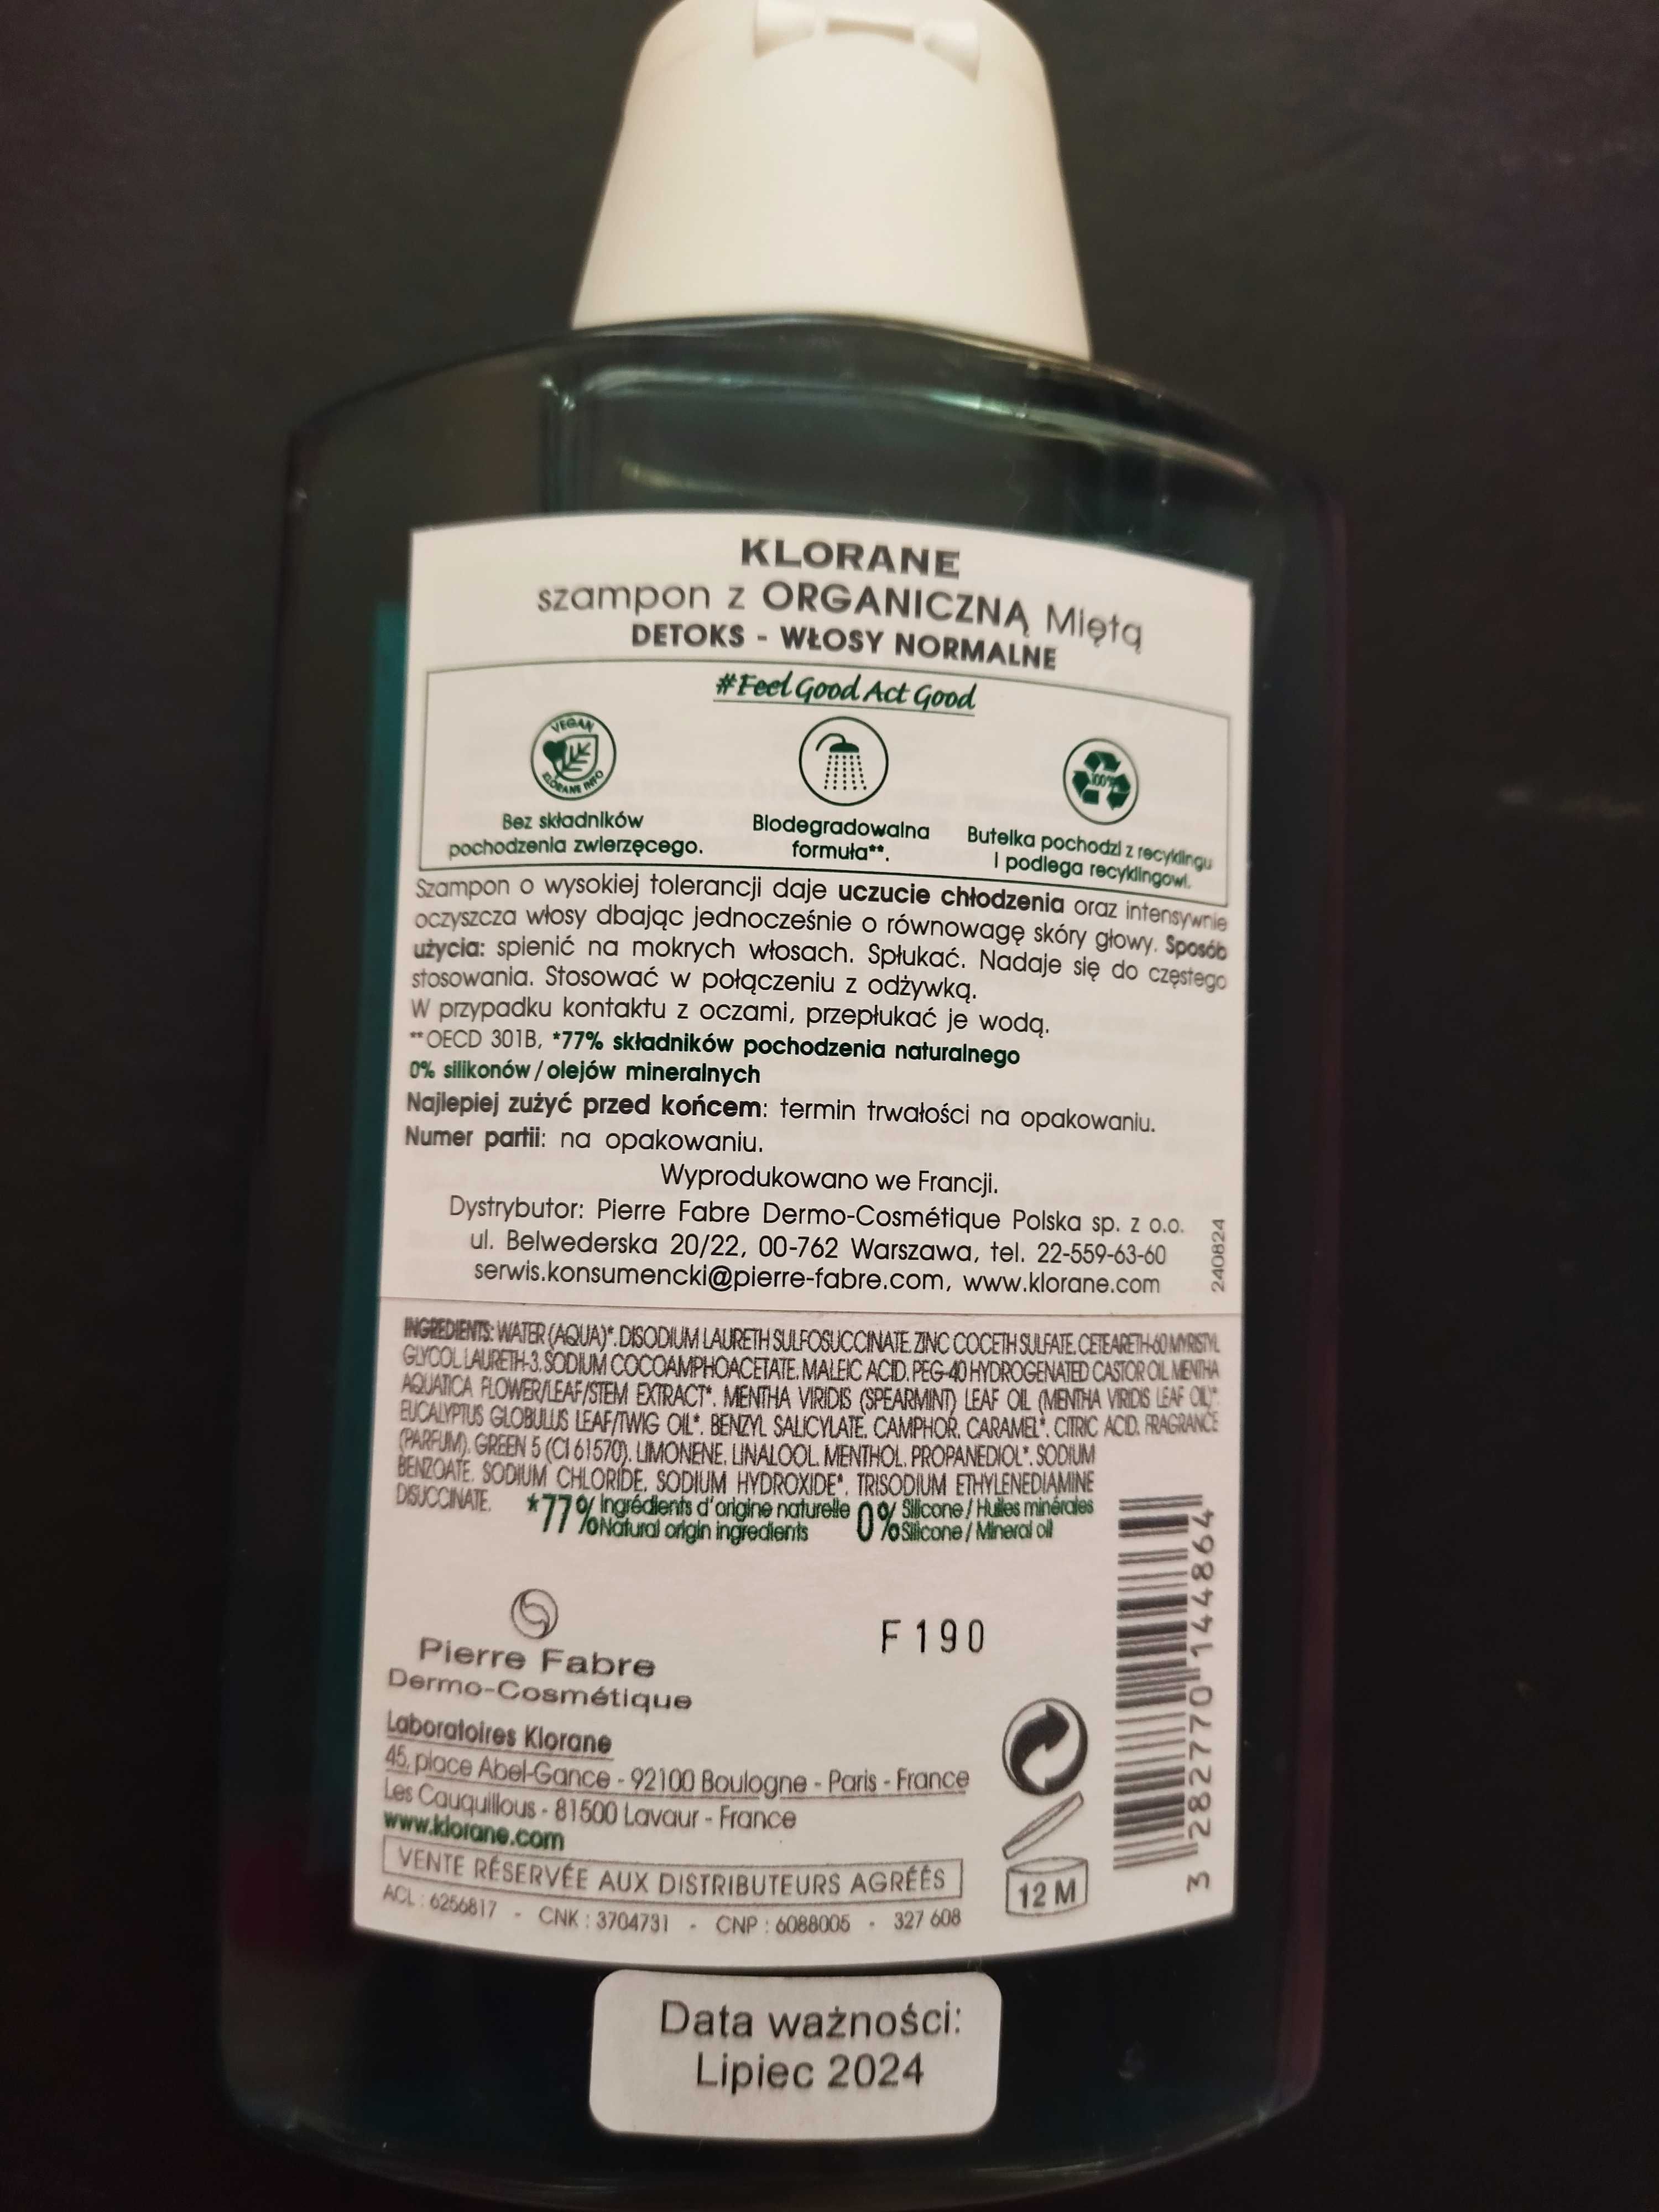 Klorane Organiczna Mięta - szampon do włosów 200ml